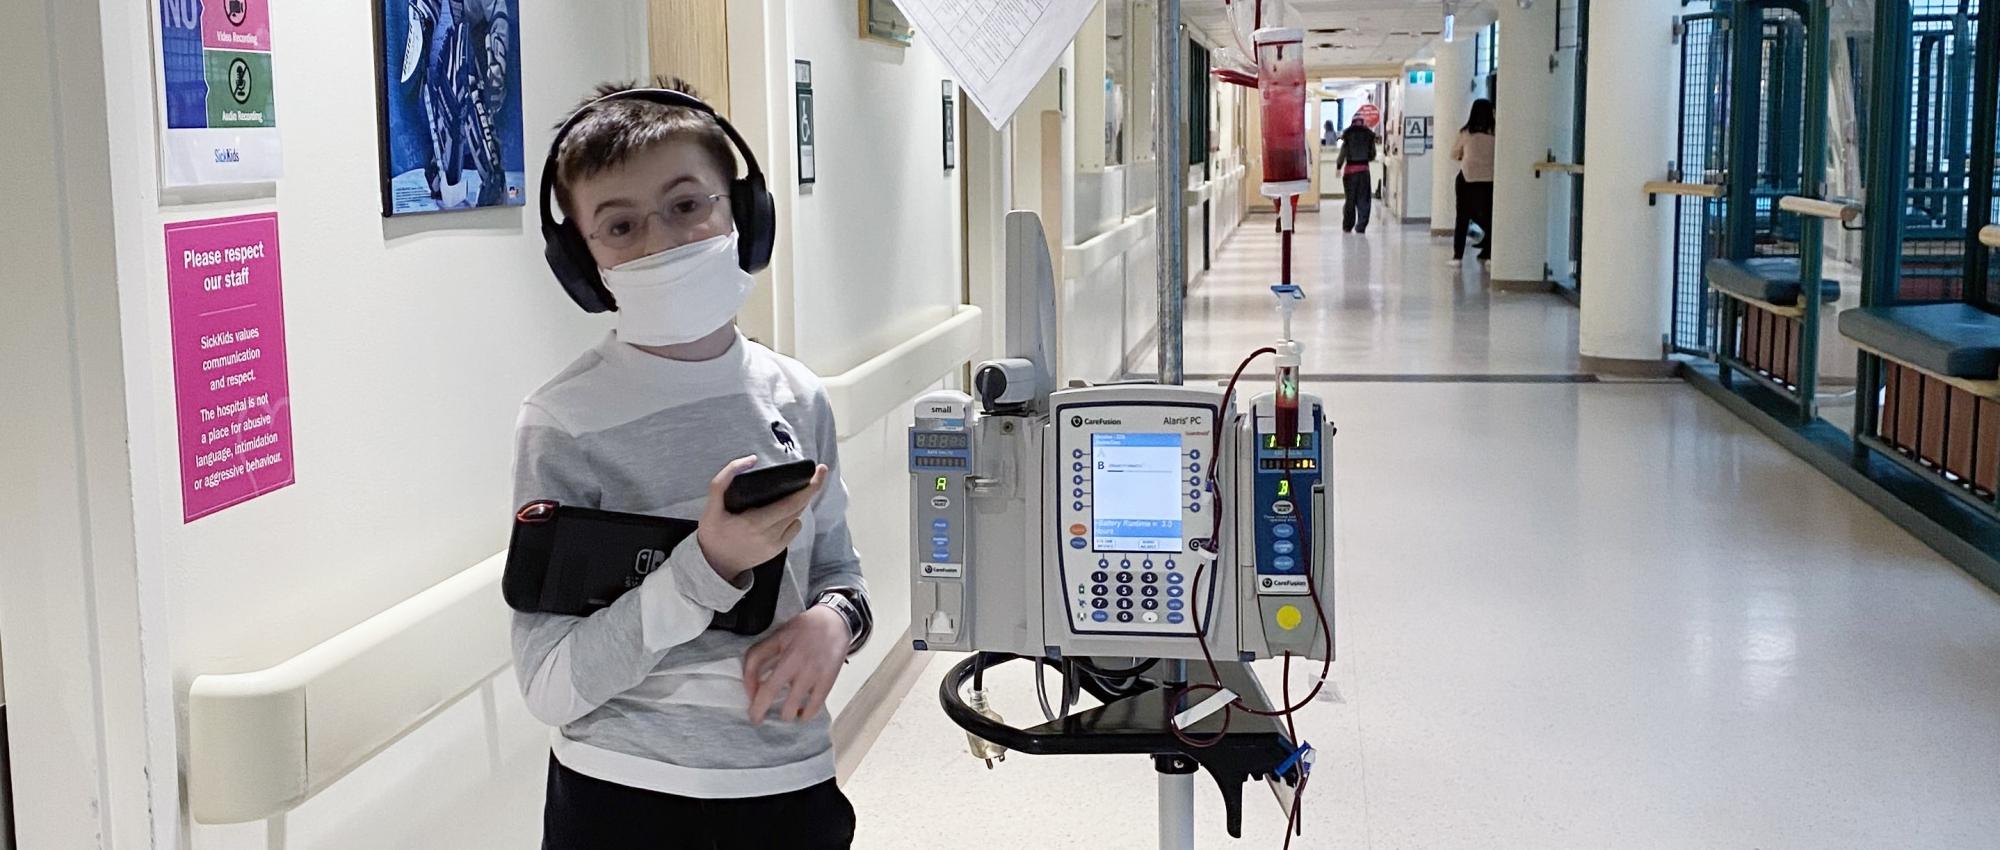 Un garçon portant des écouteurs et un masque, dans un couloir d’hôpital pendant une transfusion